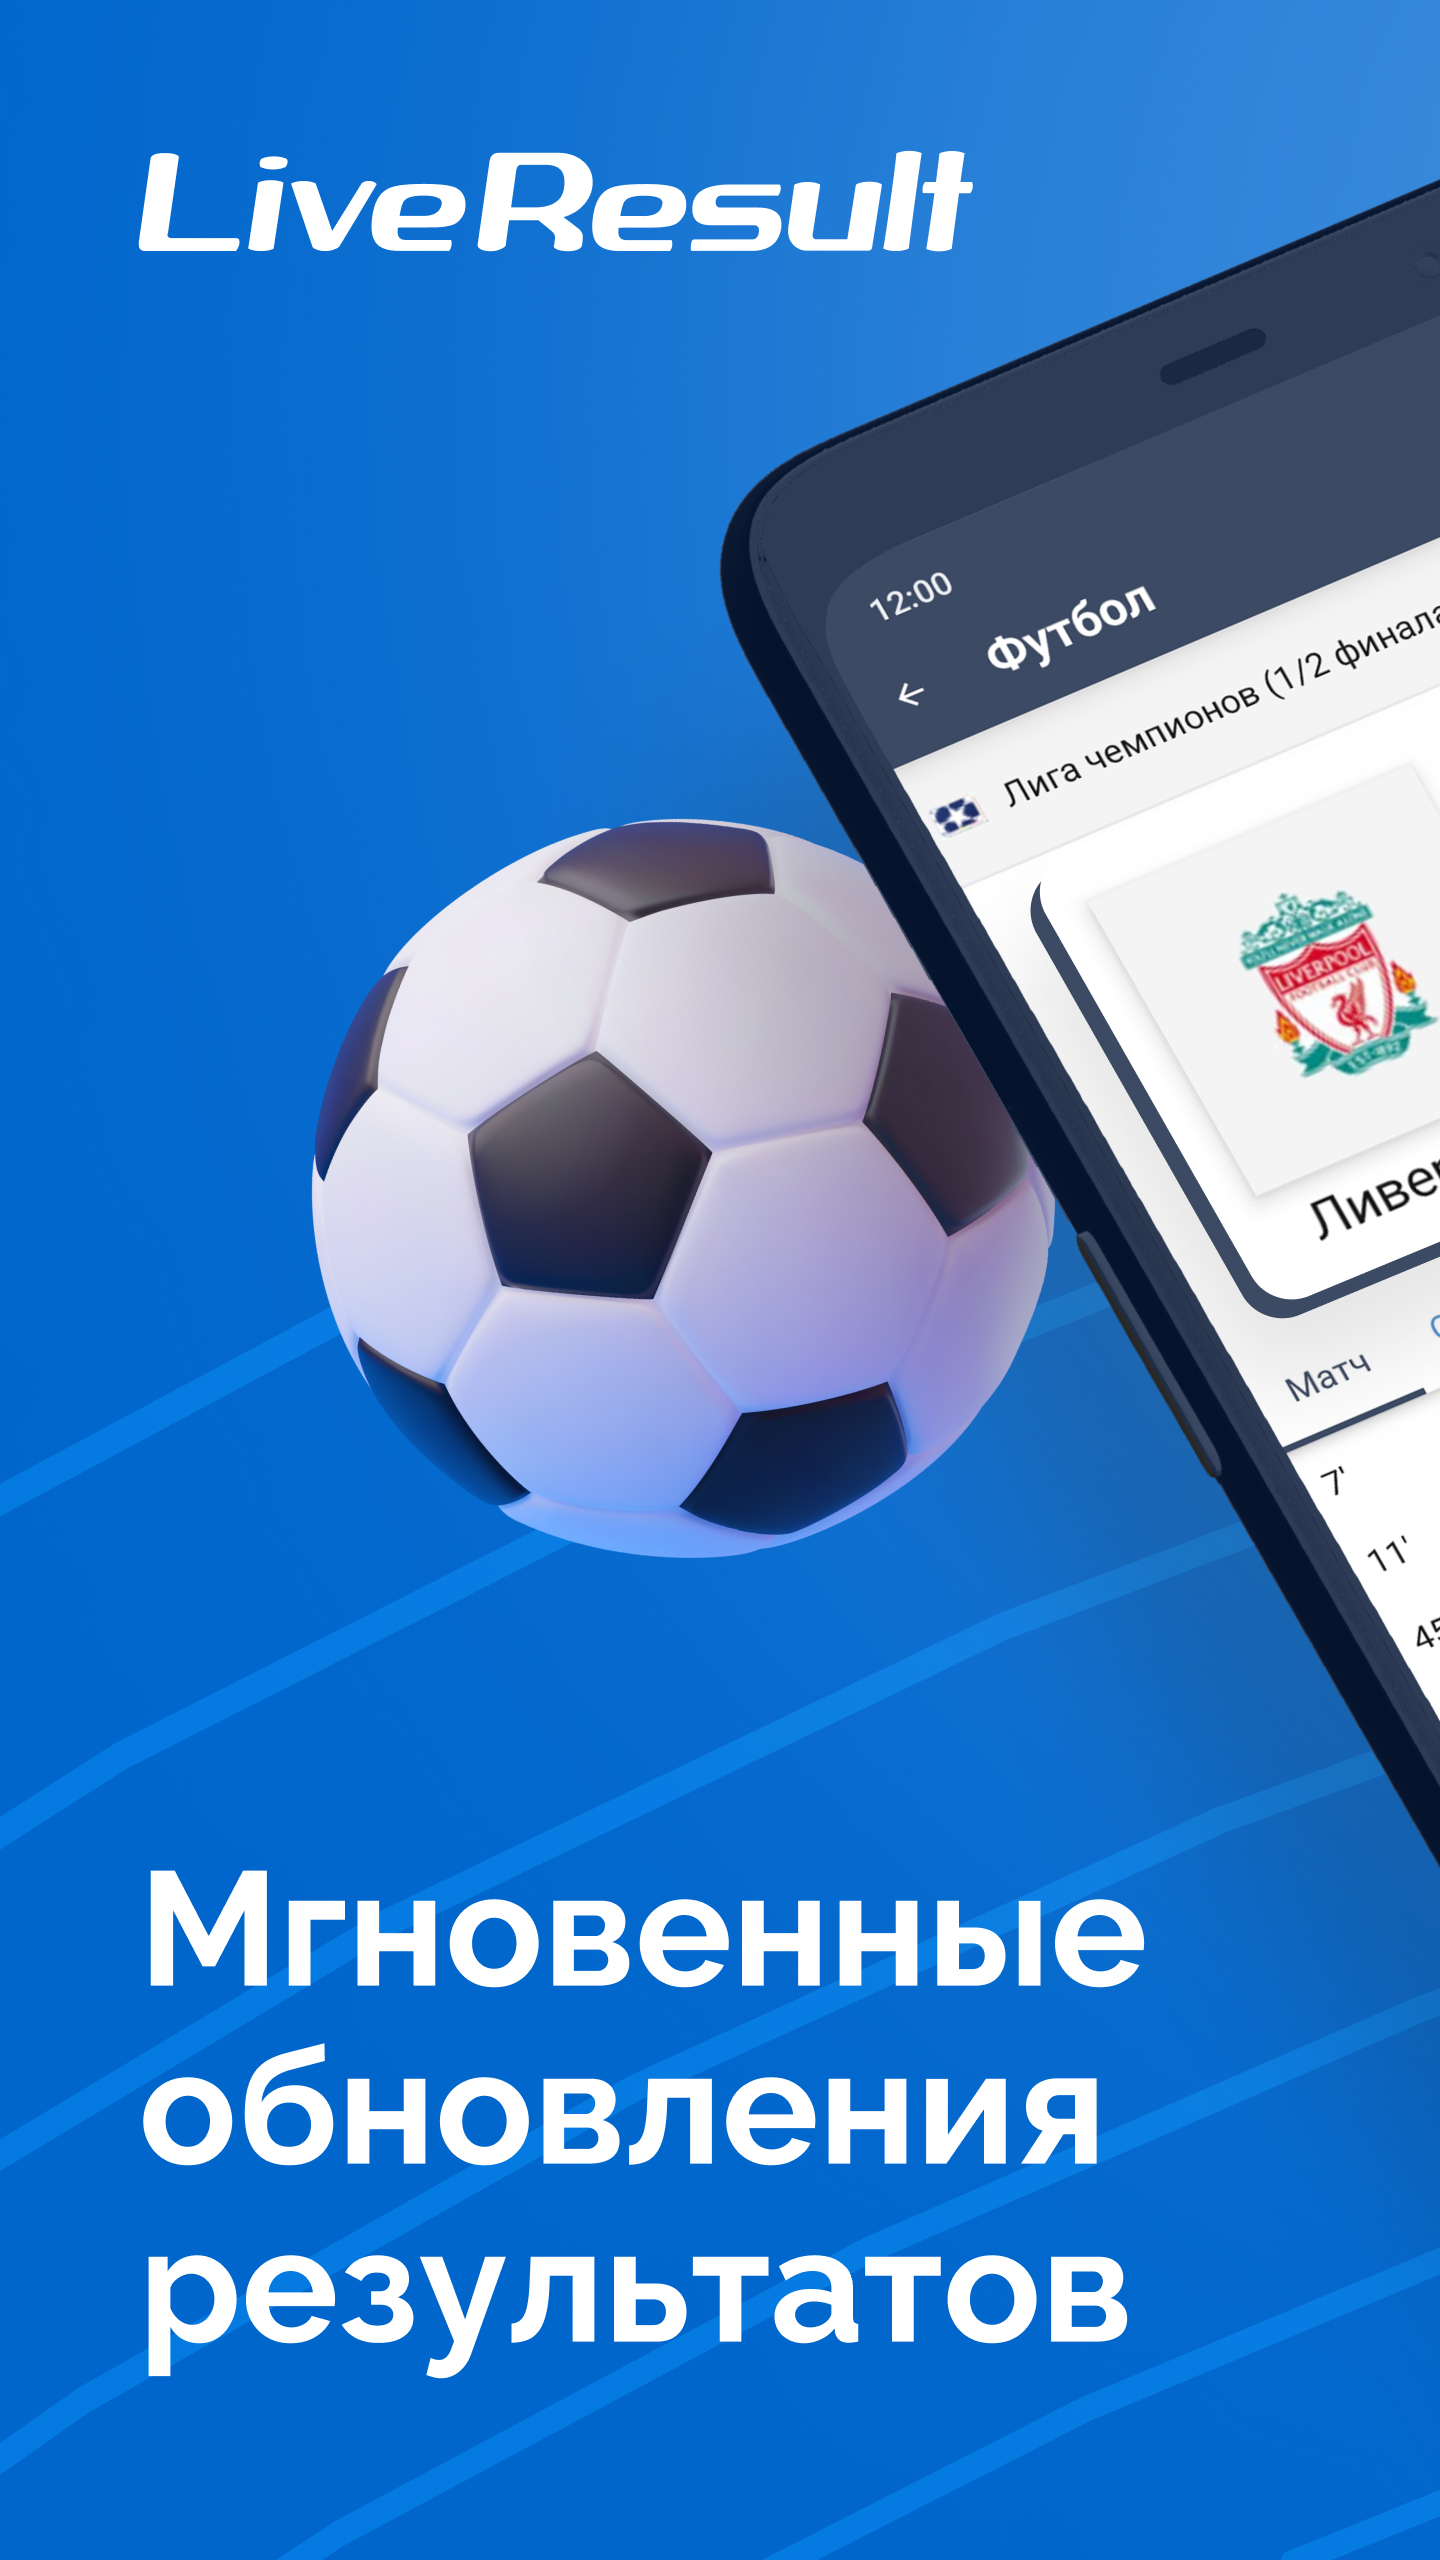 LiveResult - Футбол Онлайн, Результаты Матчей – Скачать Приложение.